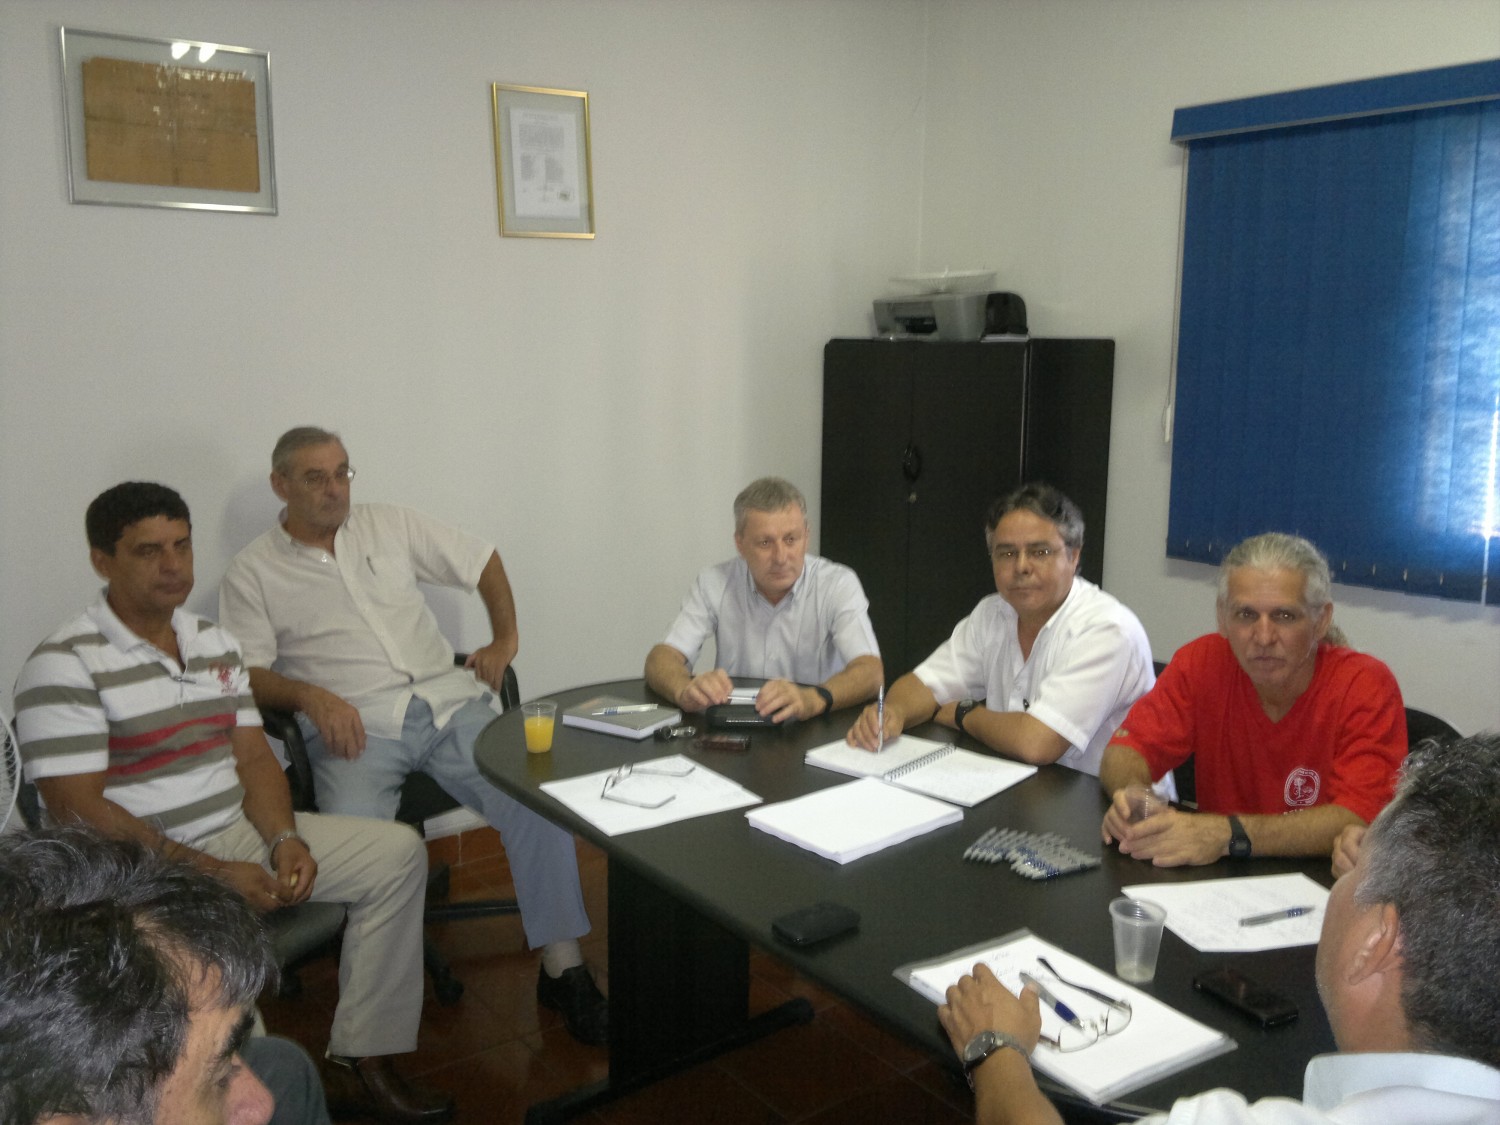 Sindicatos dos Papeleiros Filiados a Força Sindical se Reúnem em Limeira